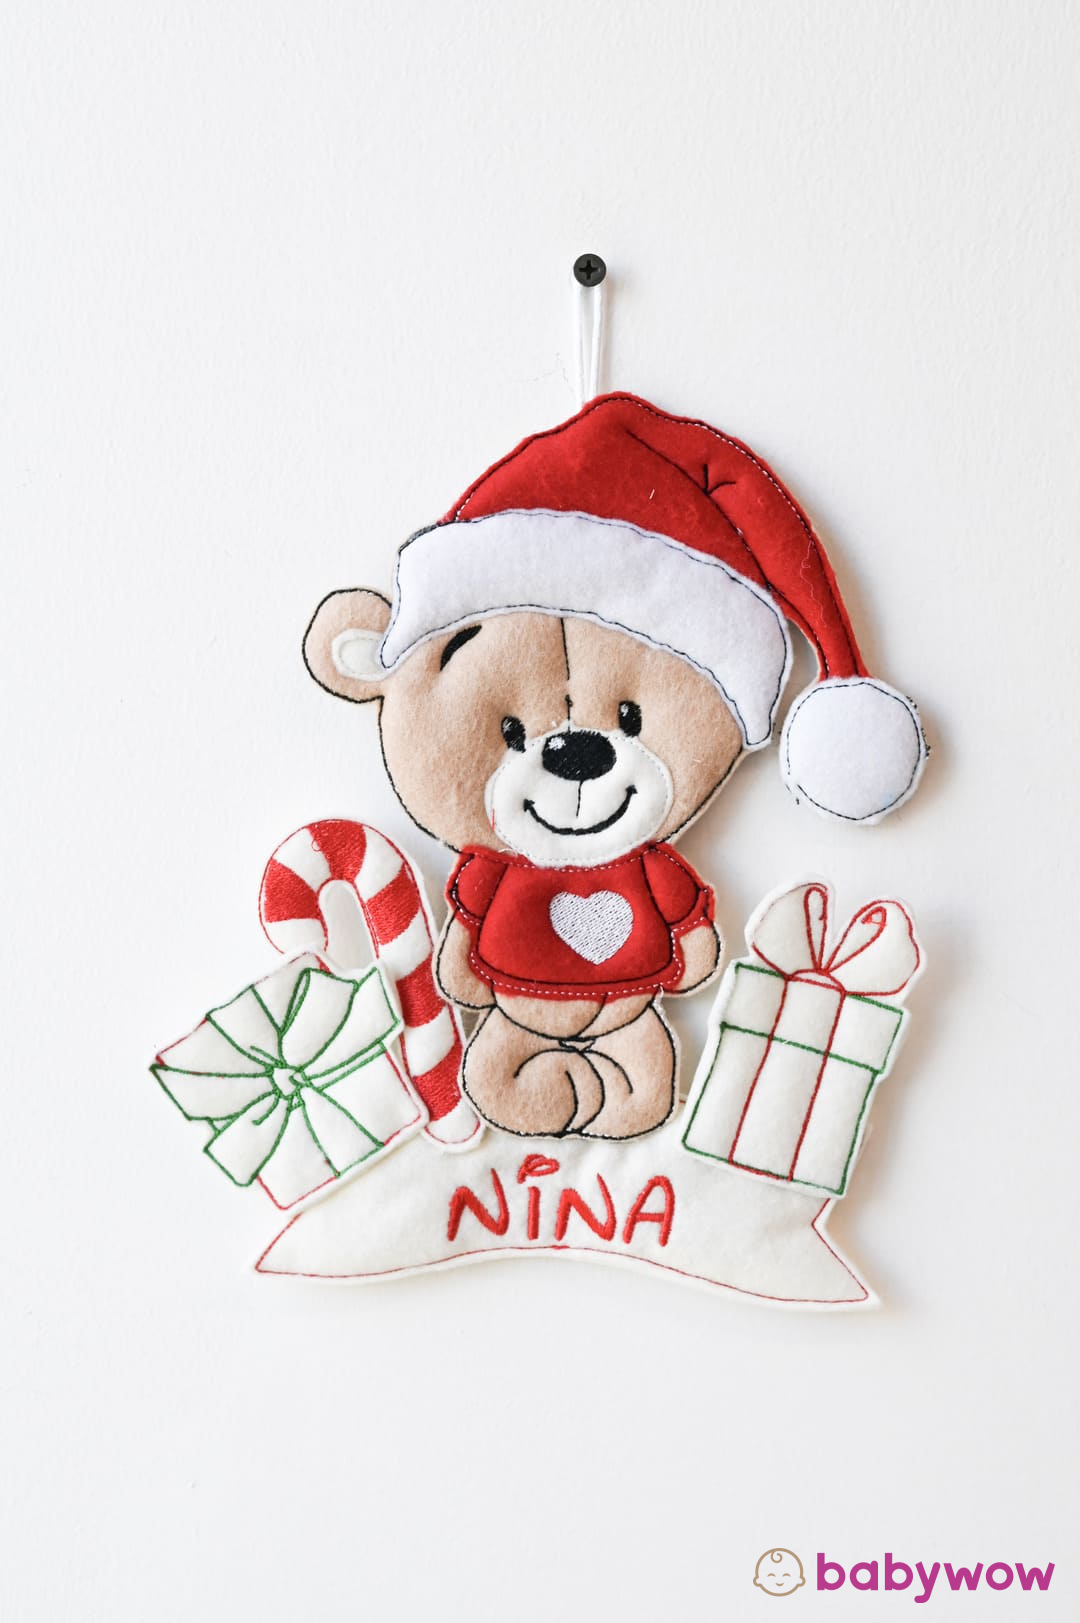 Teddy Christmas ornament